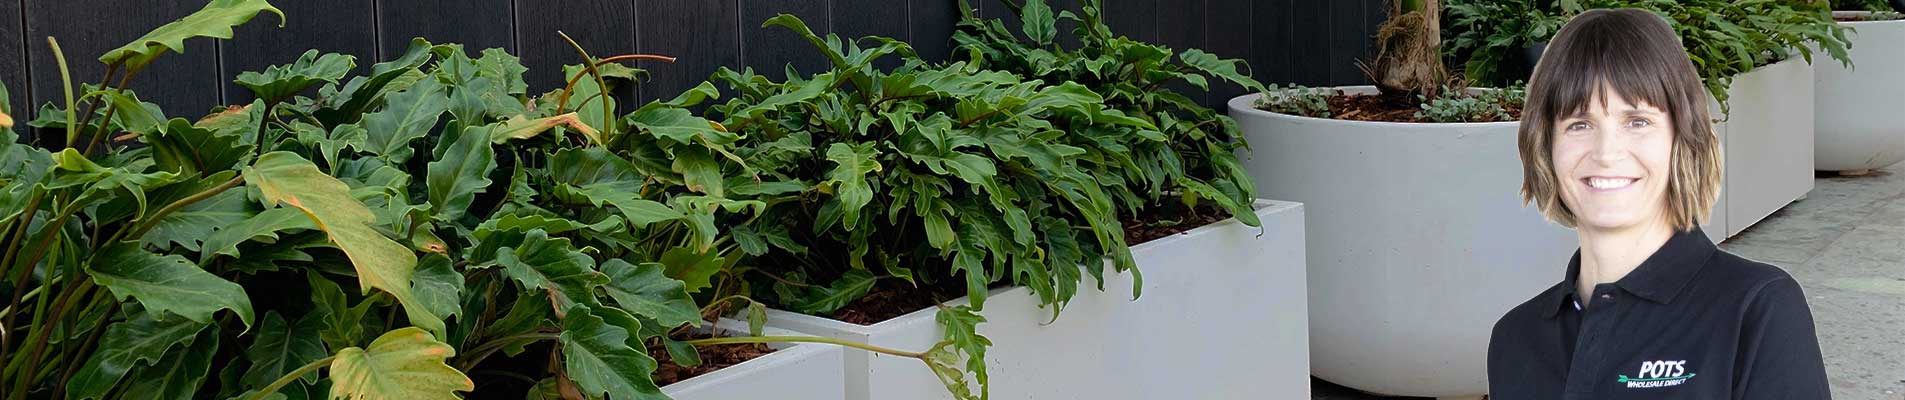 pots-planters-wholesale-direct-online-pots